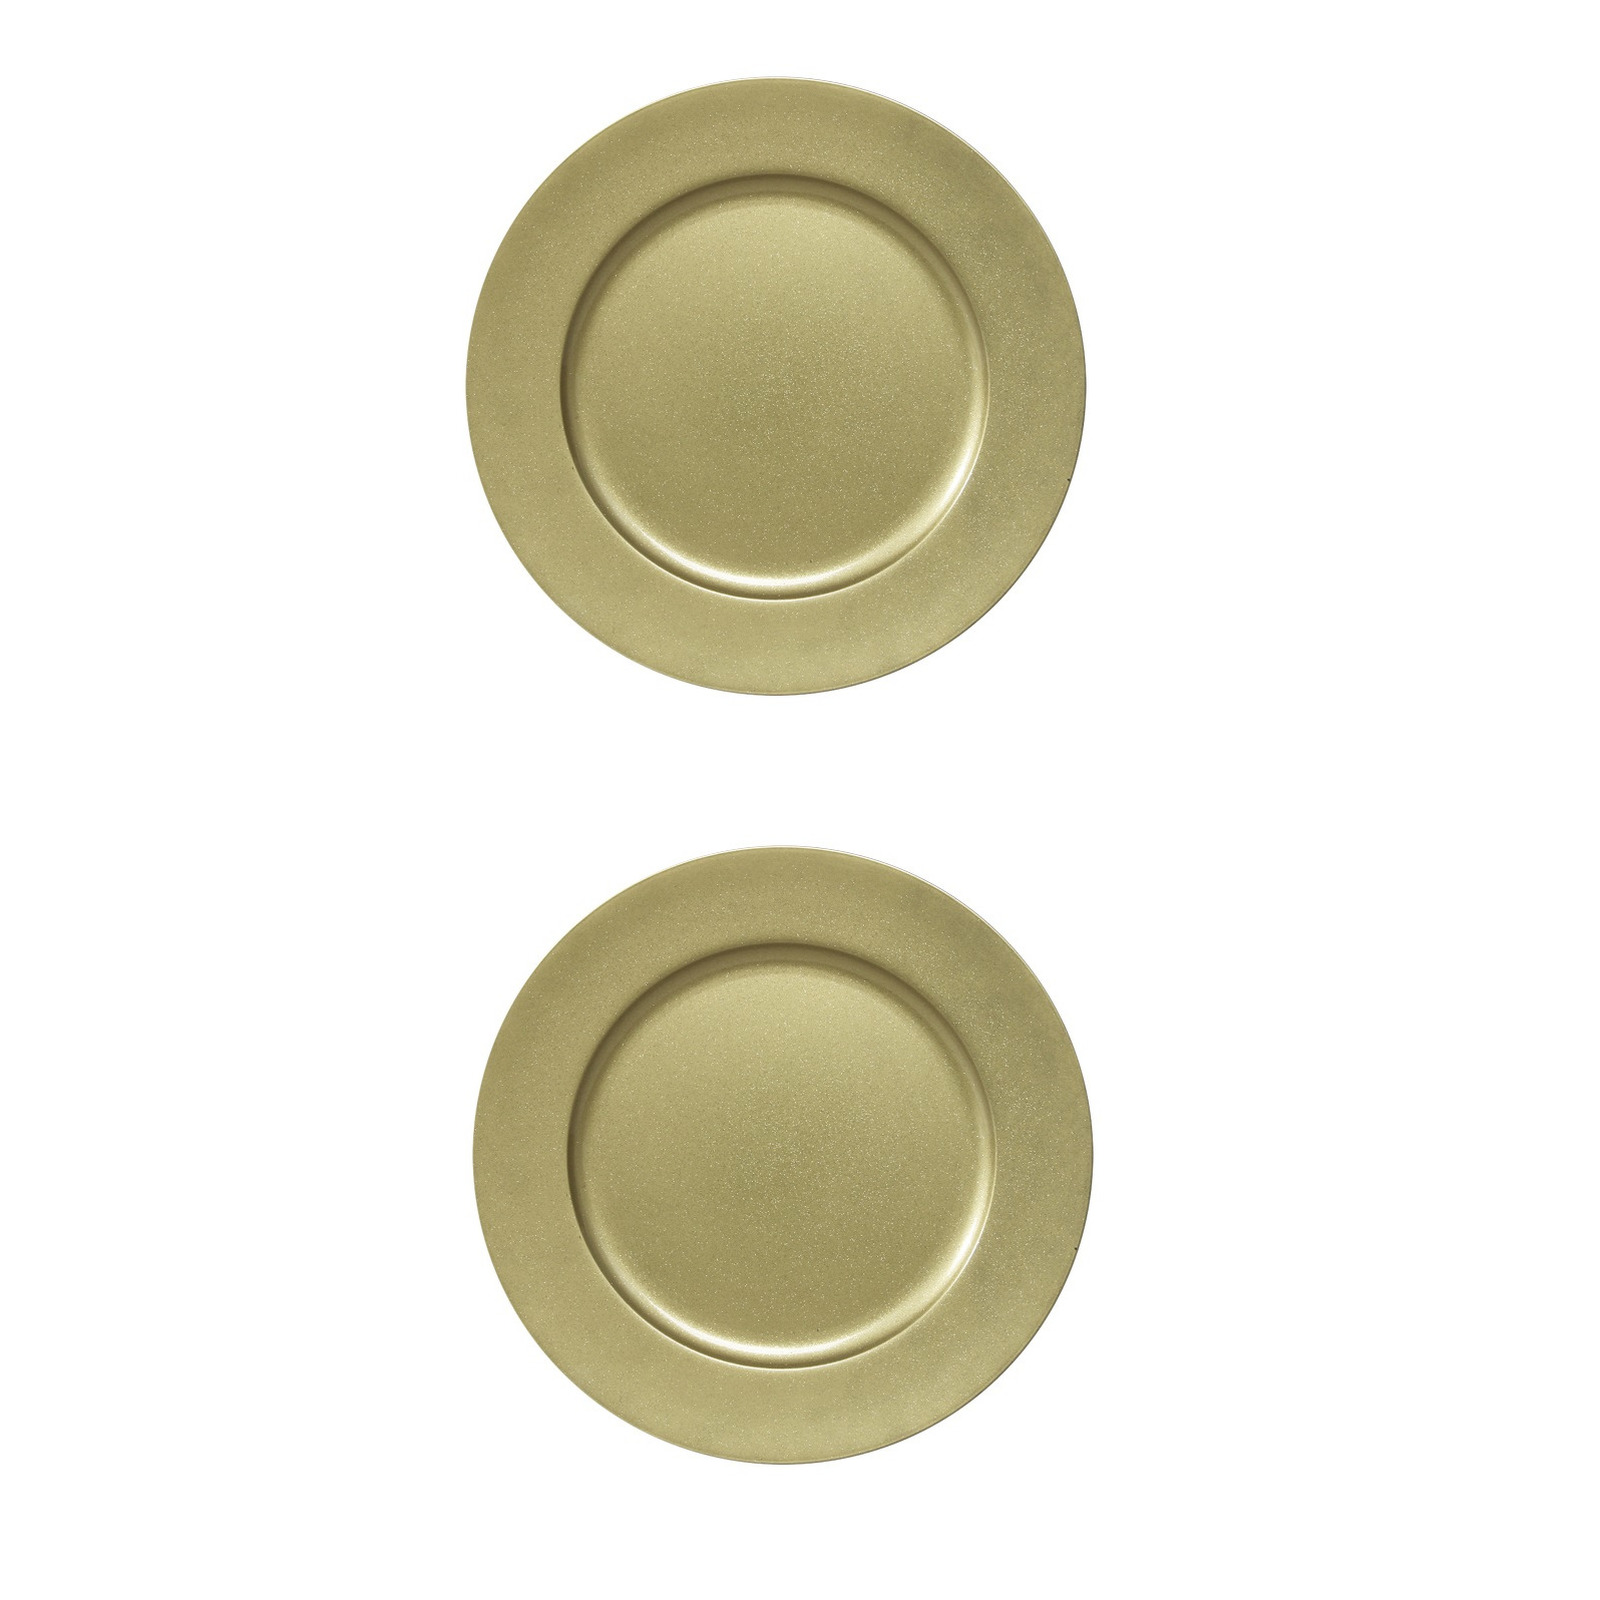 8x stuks diner borden-onderborden goud met glitters 33 cm